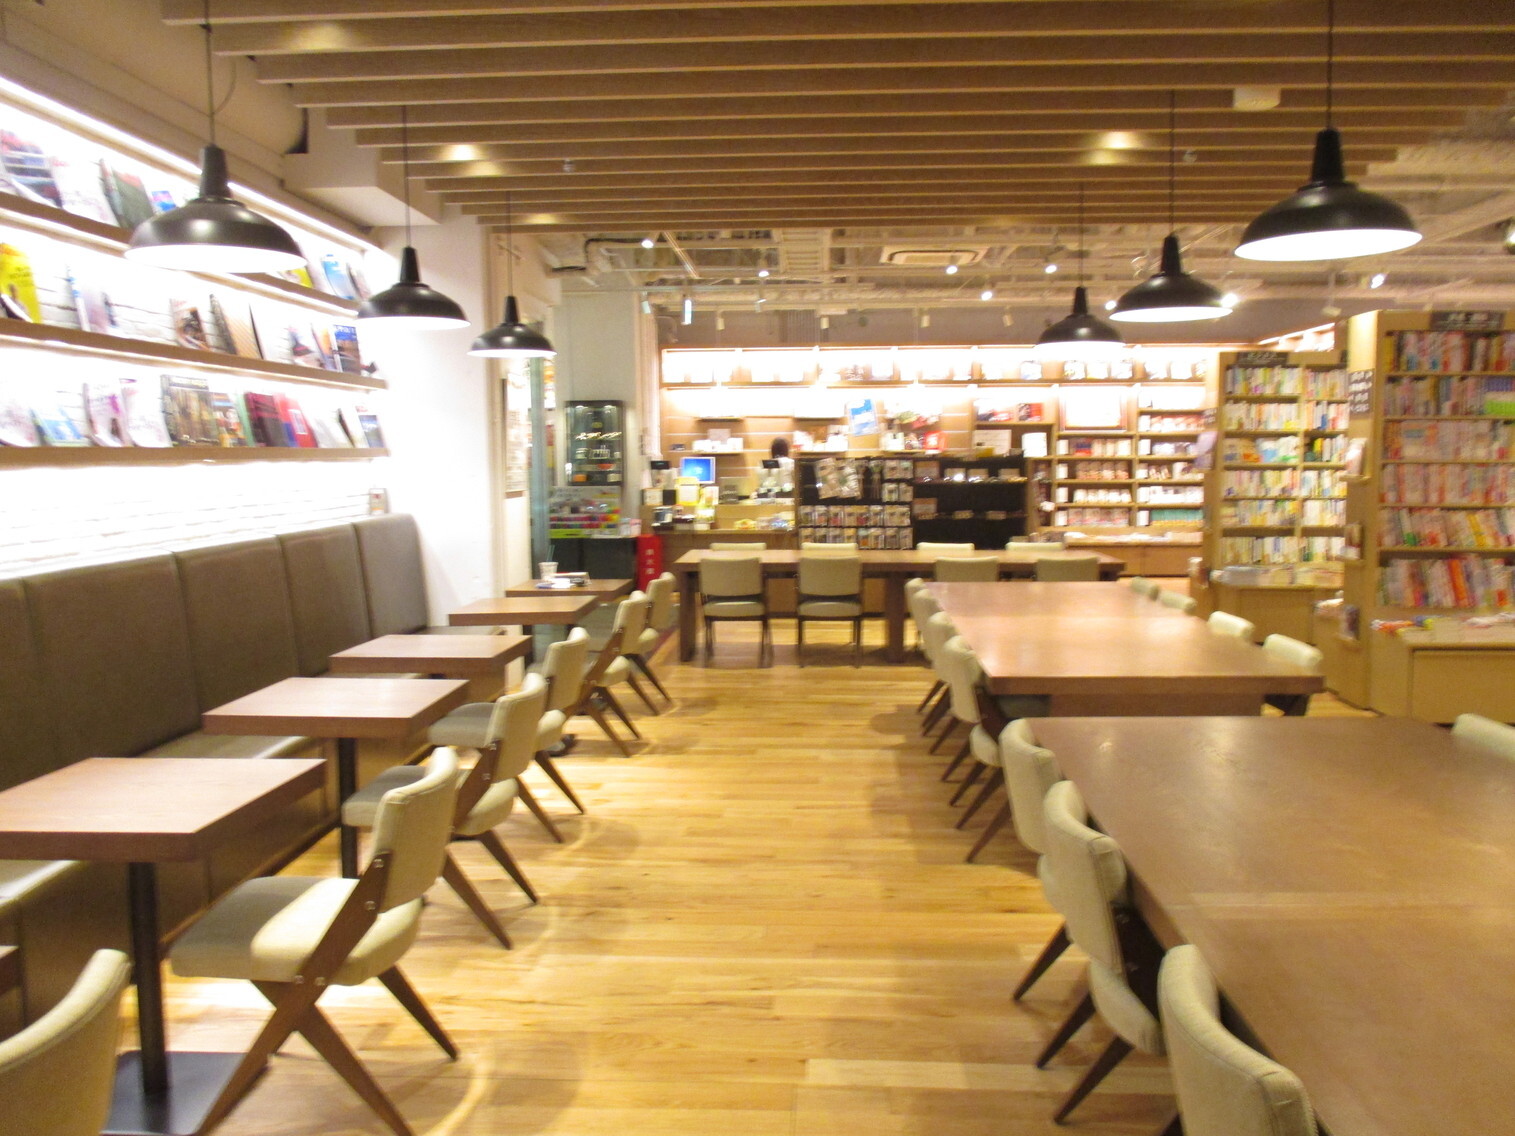 可以免費閱讀TSUTAYA書籍和雜誌的超讚星巴克咖啡！療癒大阪旅行的疲憊「星巴克咖啡TSUTAYA戎橋(TSUTAYA EBISUBASHI)店」的魅力！